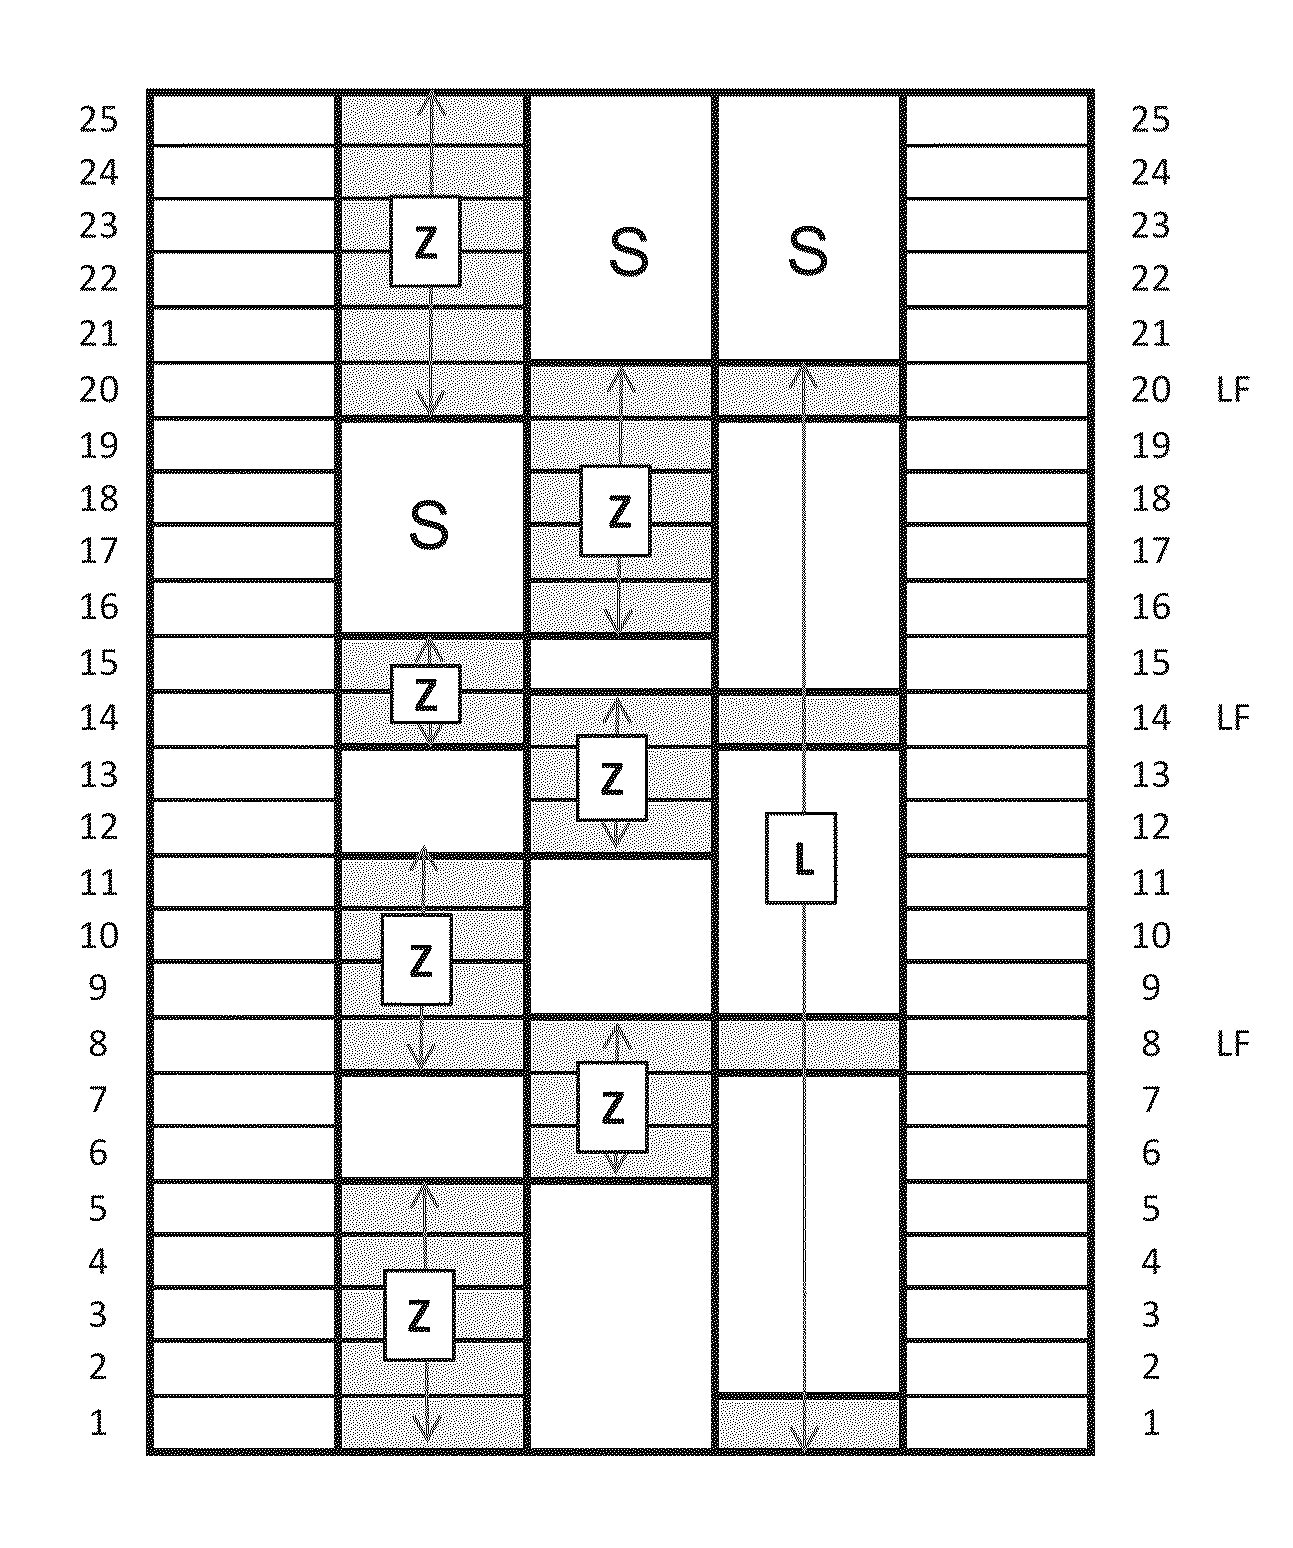 Elevator arrangement and method for re-adjusting the elevator arrangement